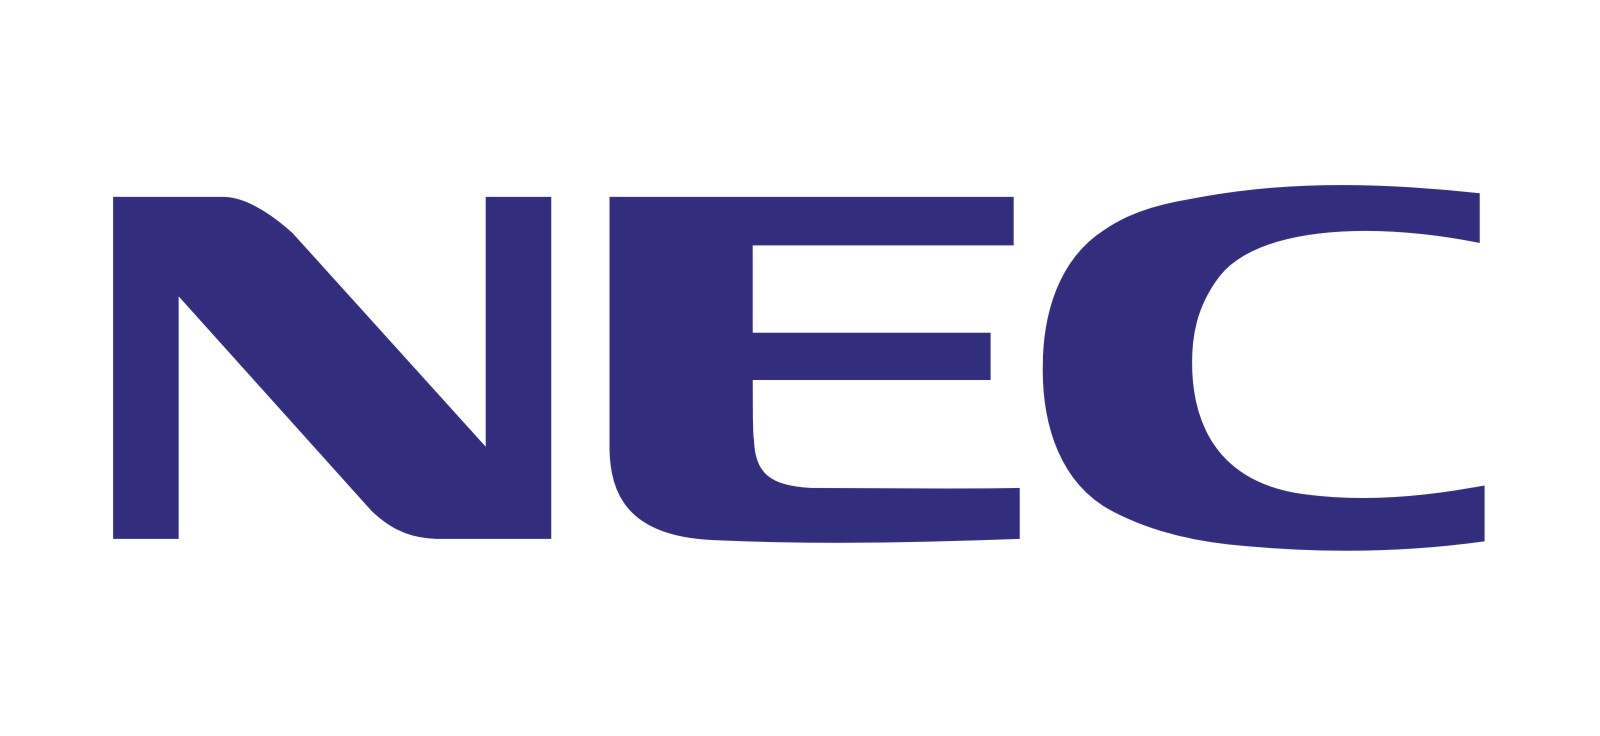 【更新】NEC、スマートフォン事業から撤退へ。レノボとの新会社設立ならず→NECは否定